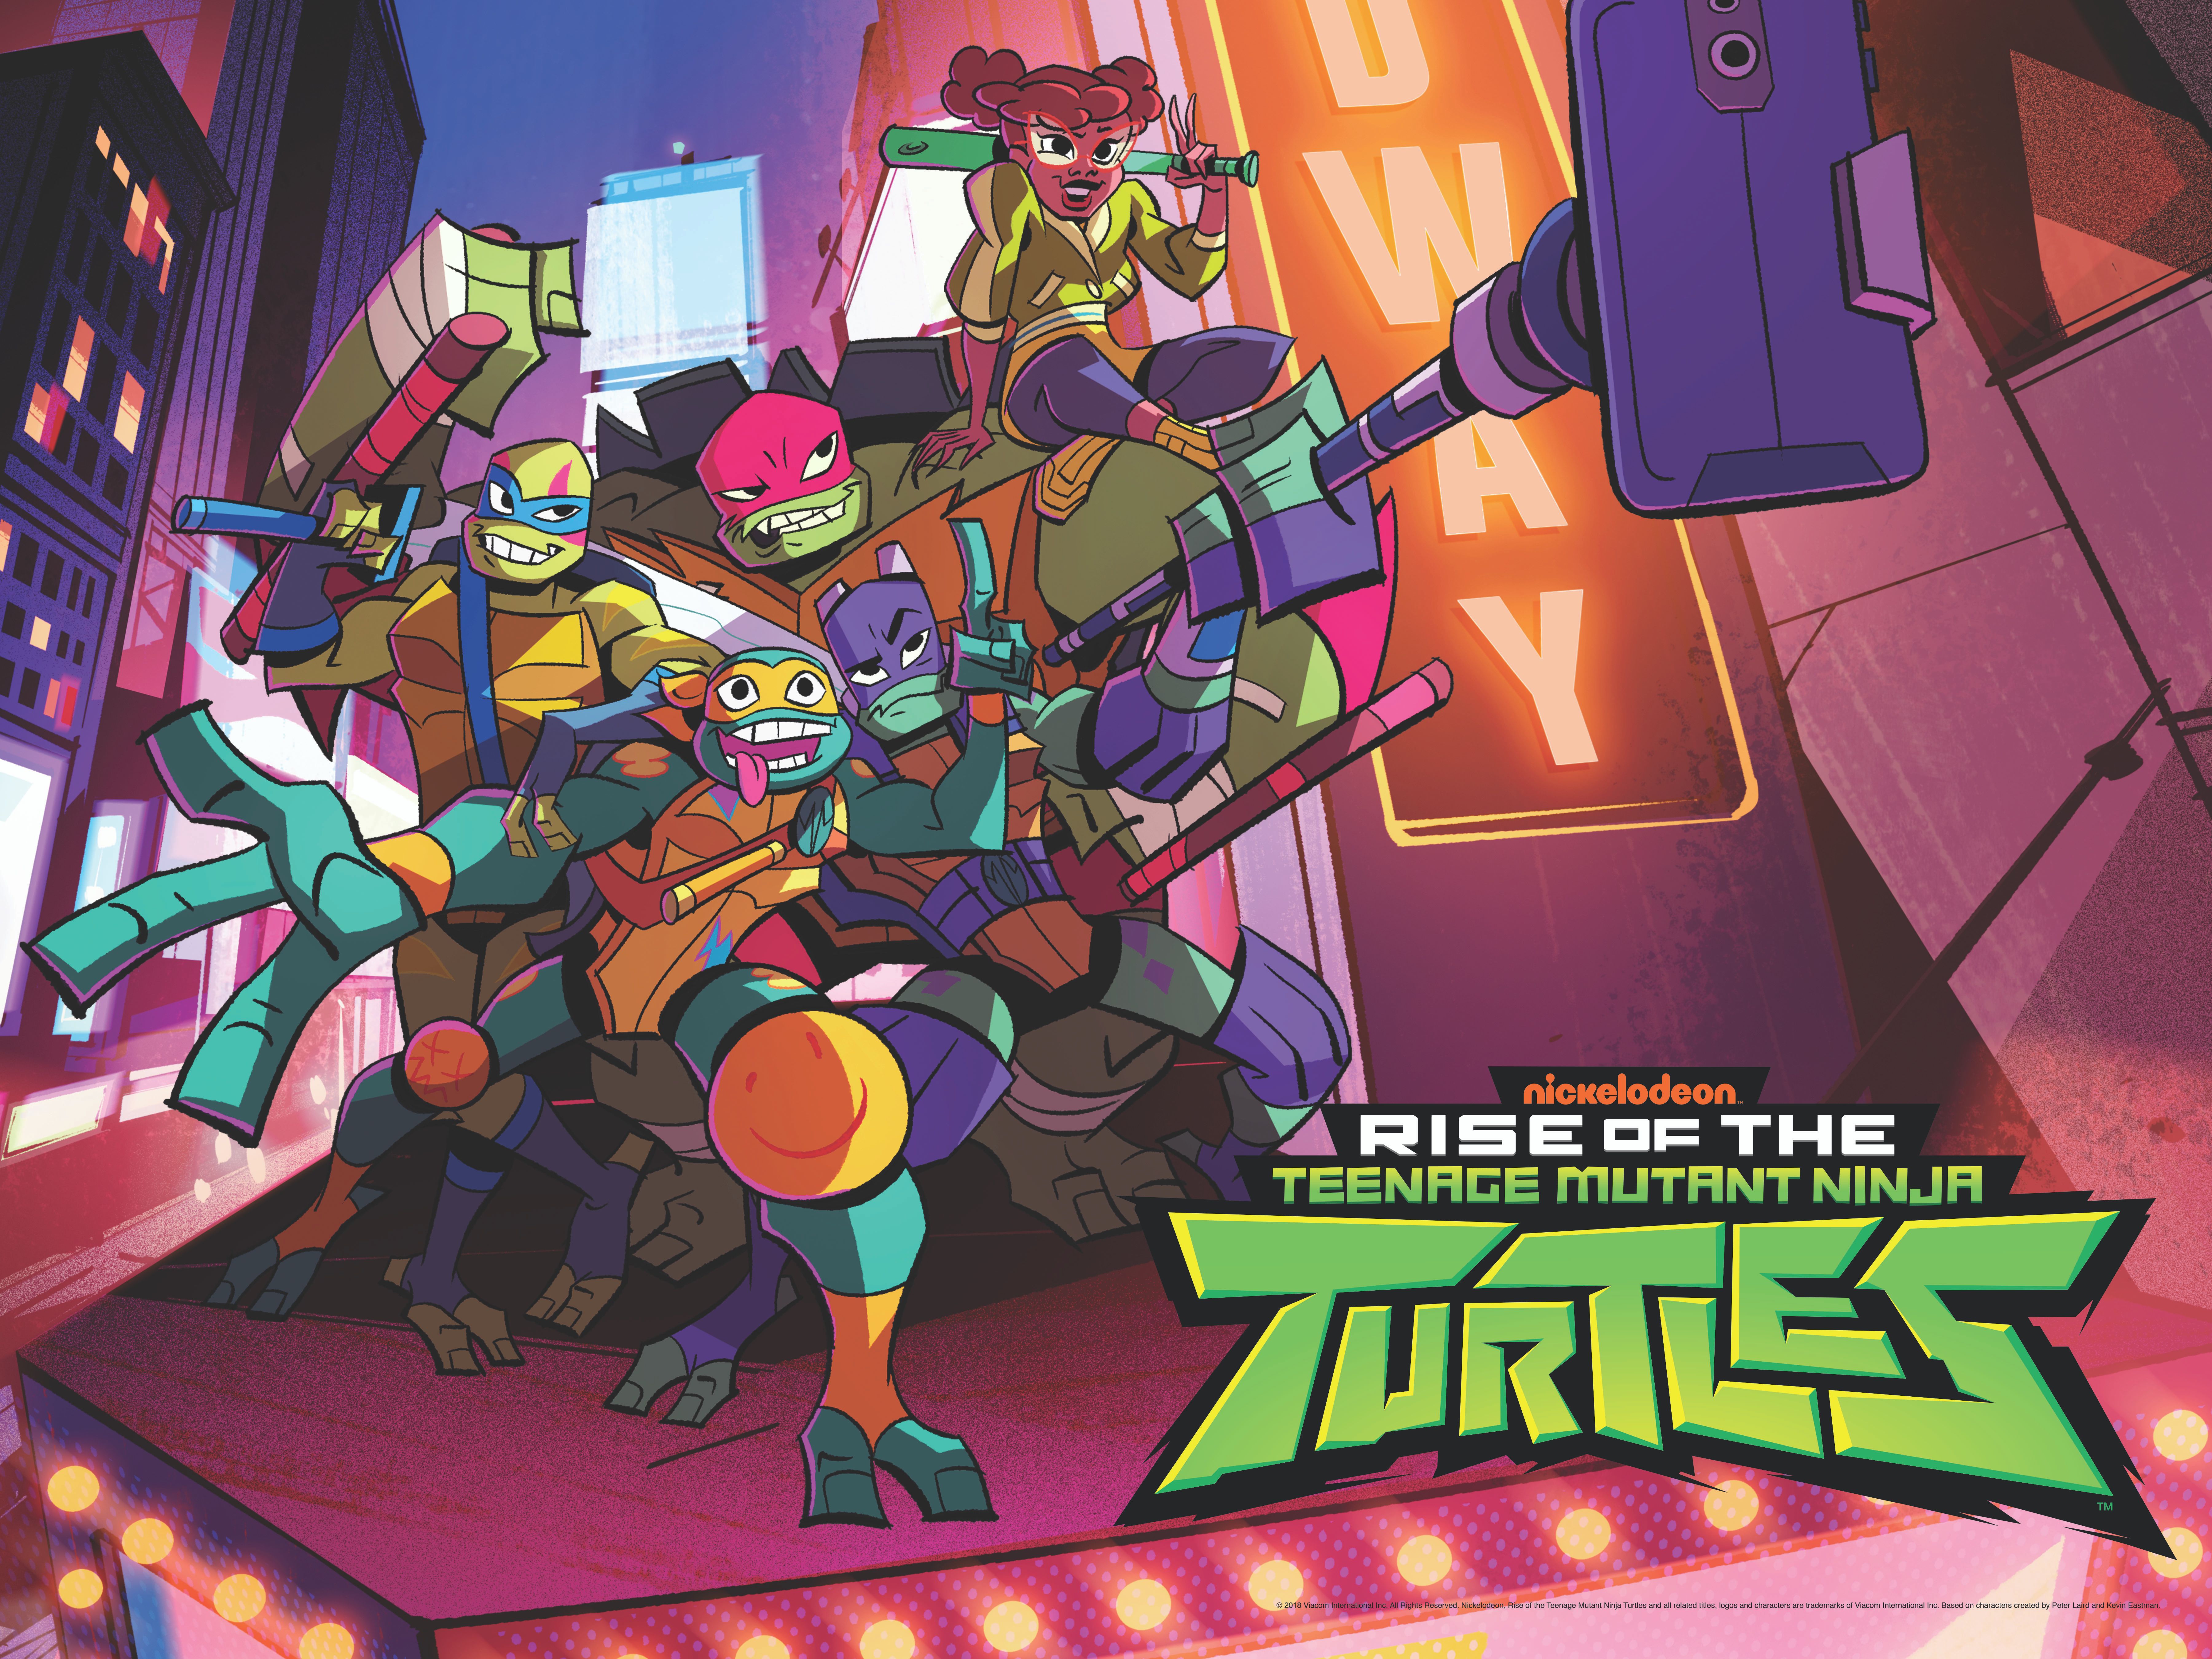 Rise of the Teenage Mutant Ninja Turtles Trailer Reveals Nickelodeon's - Rise Of The Teenage Mutant Ninja Turtles